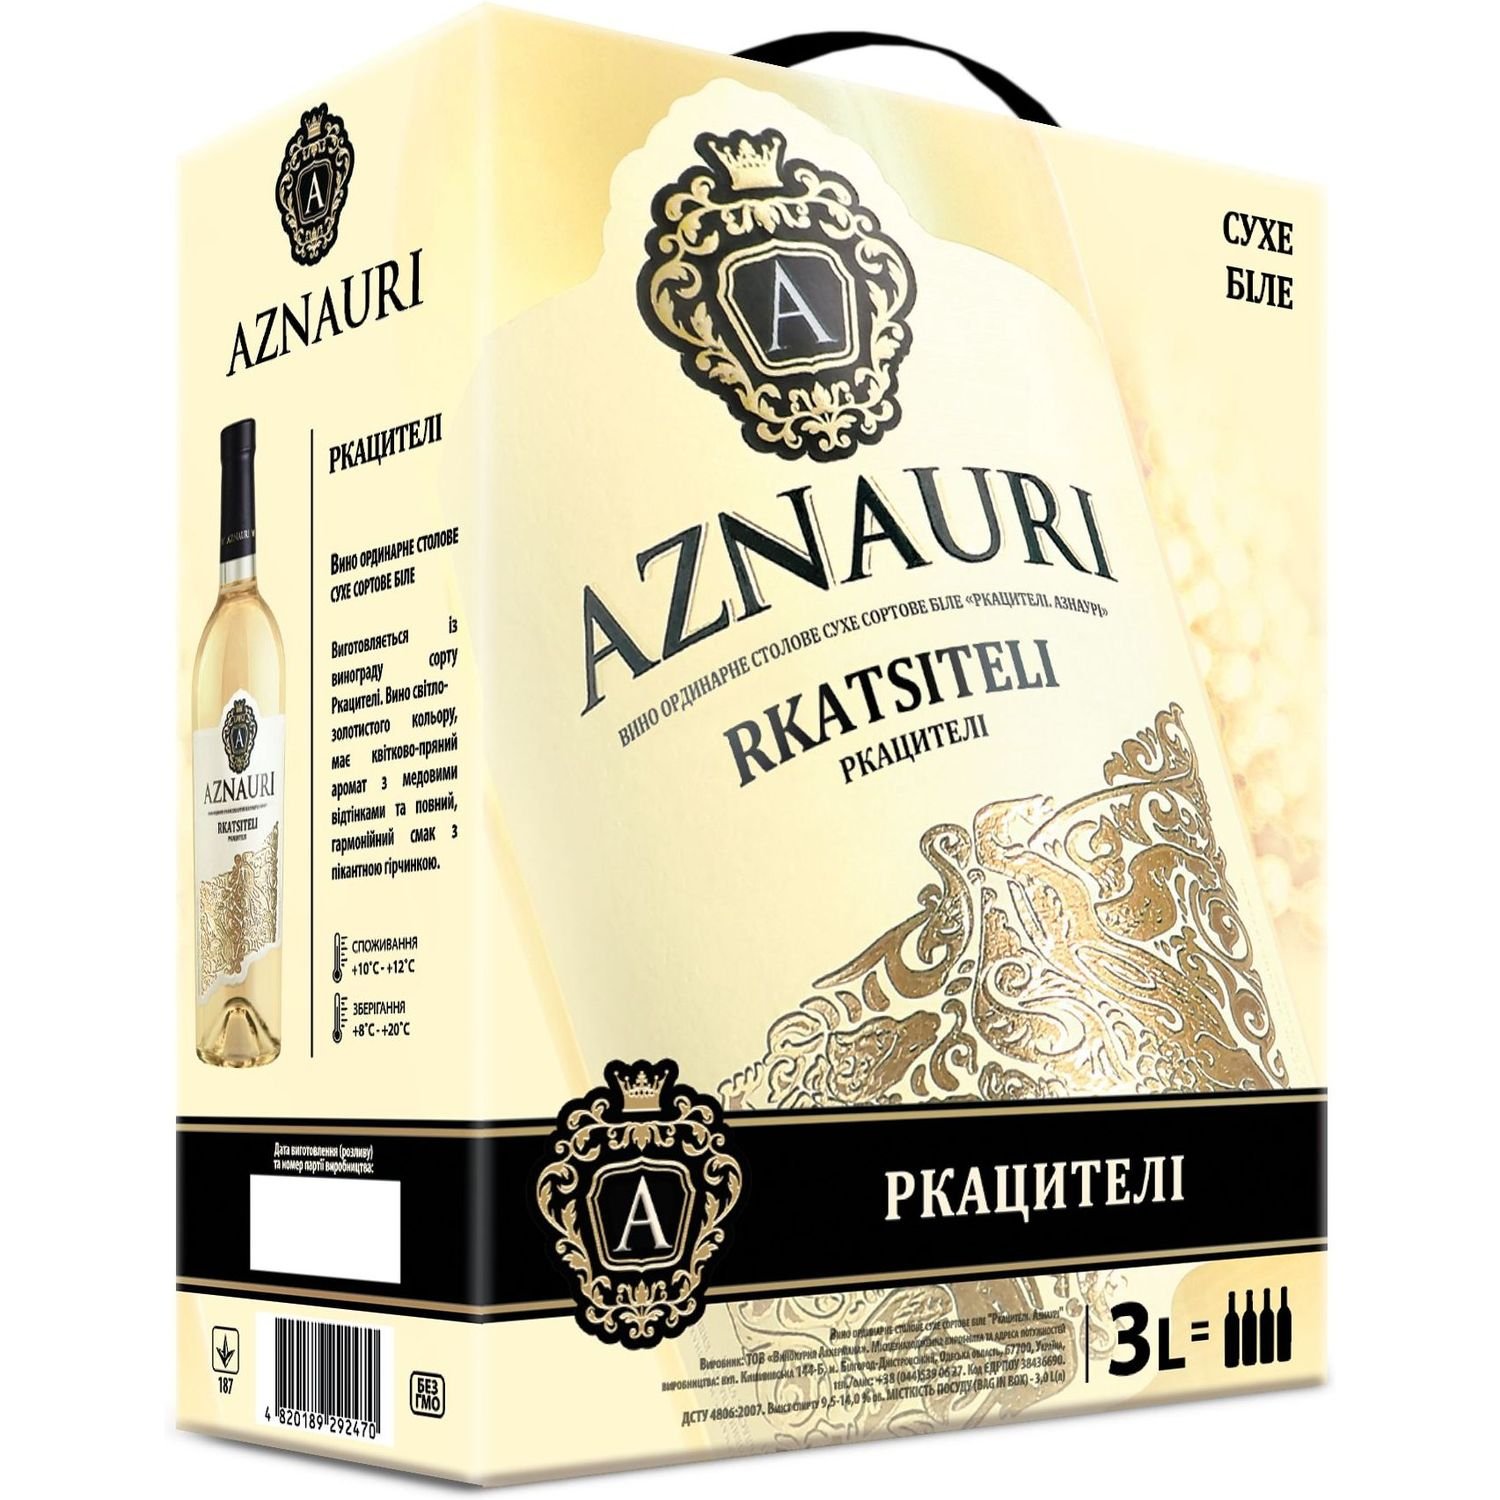 Вино Aznauri Rkatsiteli, біле, сухе, 3 л - фото 1